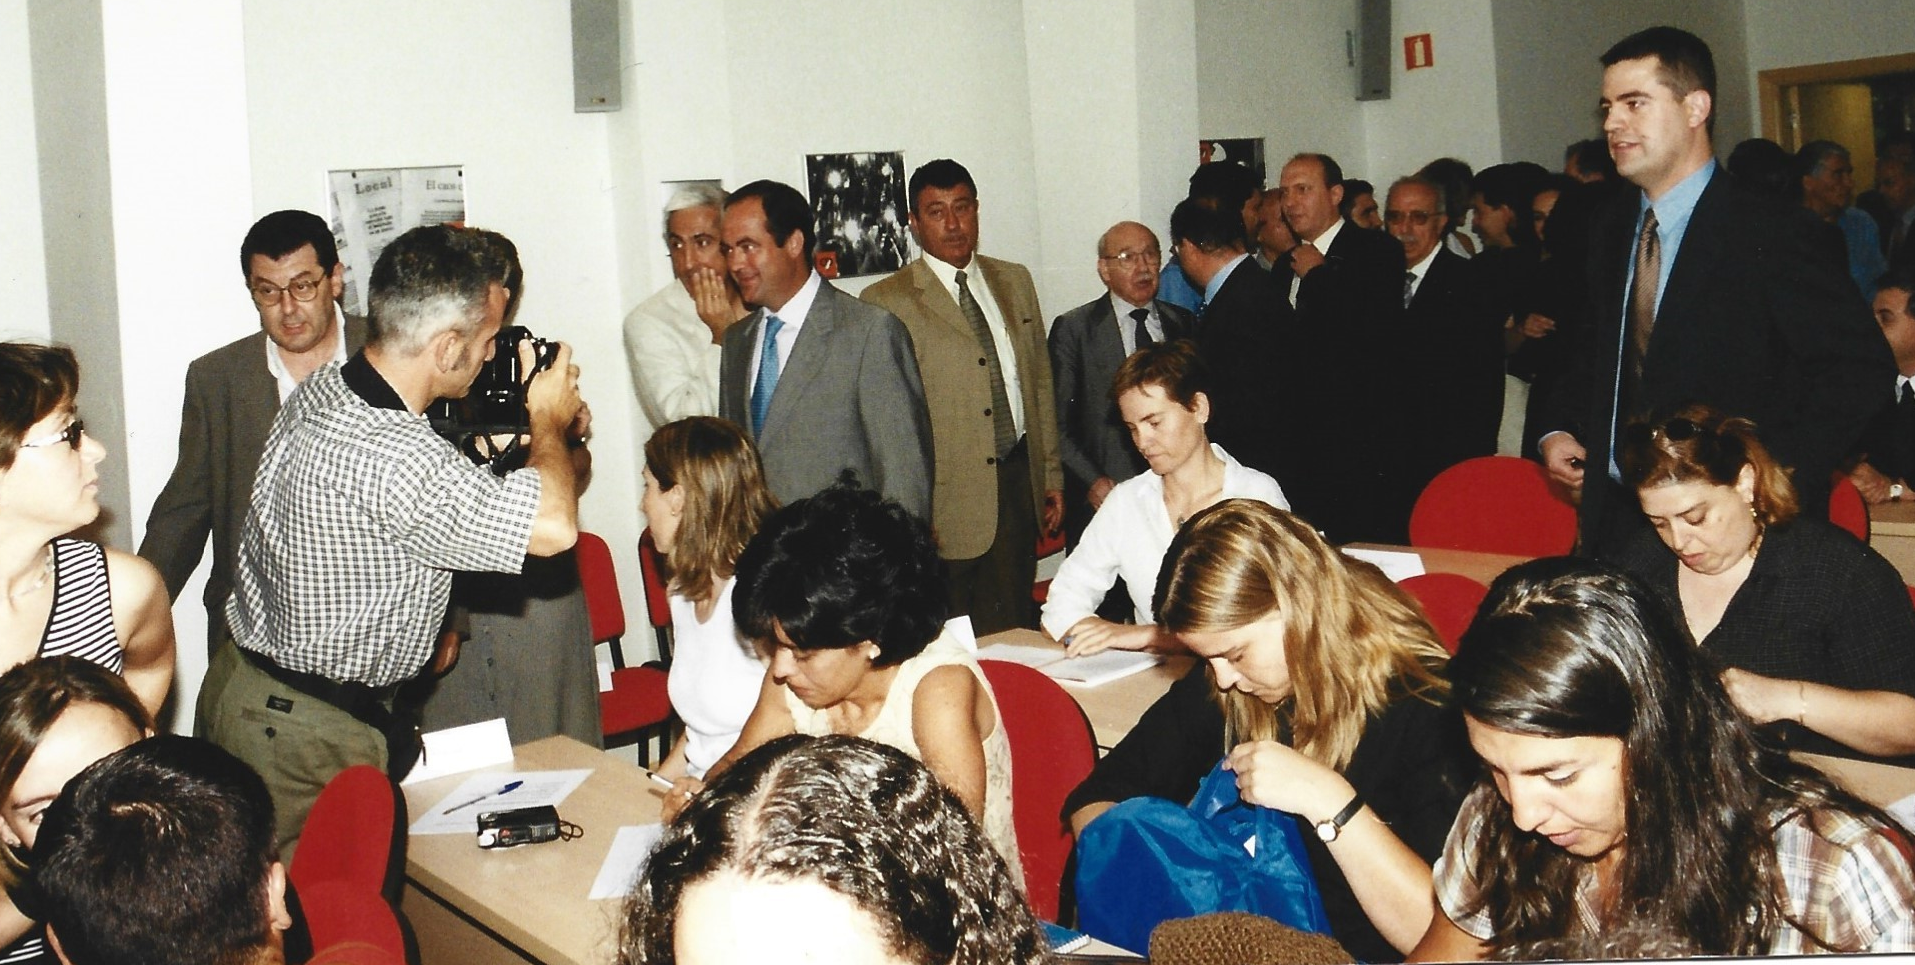 Numerosos periodistas trabajaron esa tarde en el propio Centro de Prensa para cubrir el acto de inauguración.